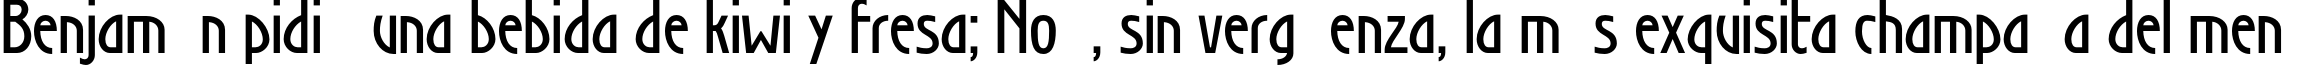 Пример написания шрифтом SecessionLight Bold текста на испанском